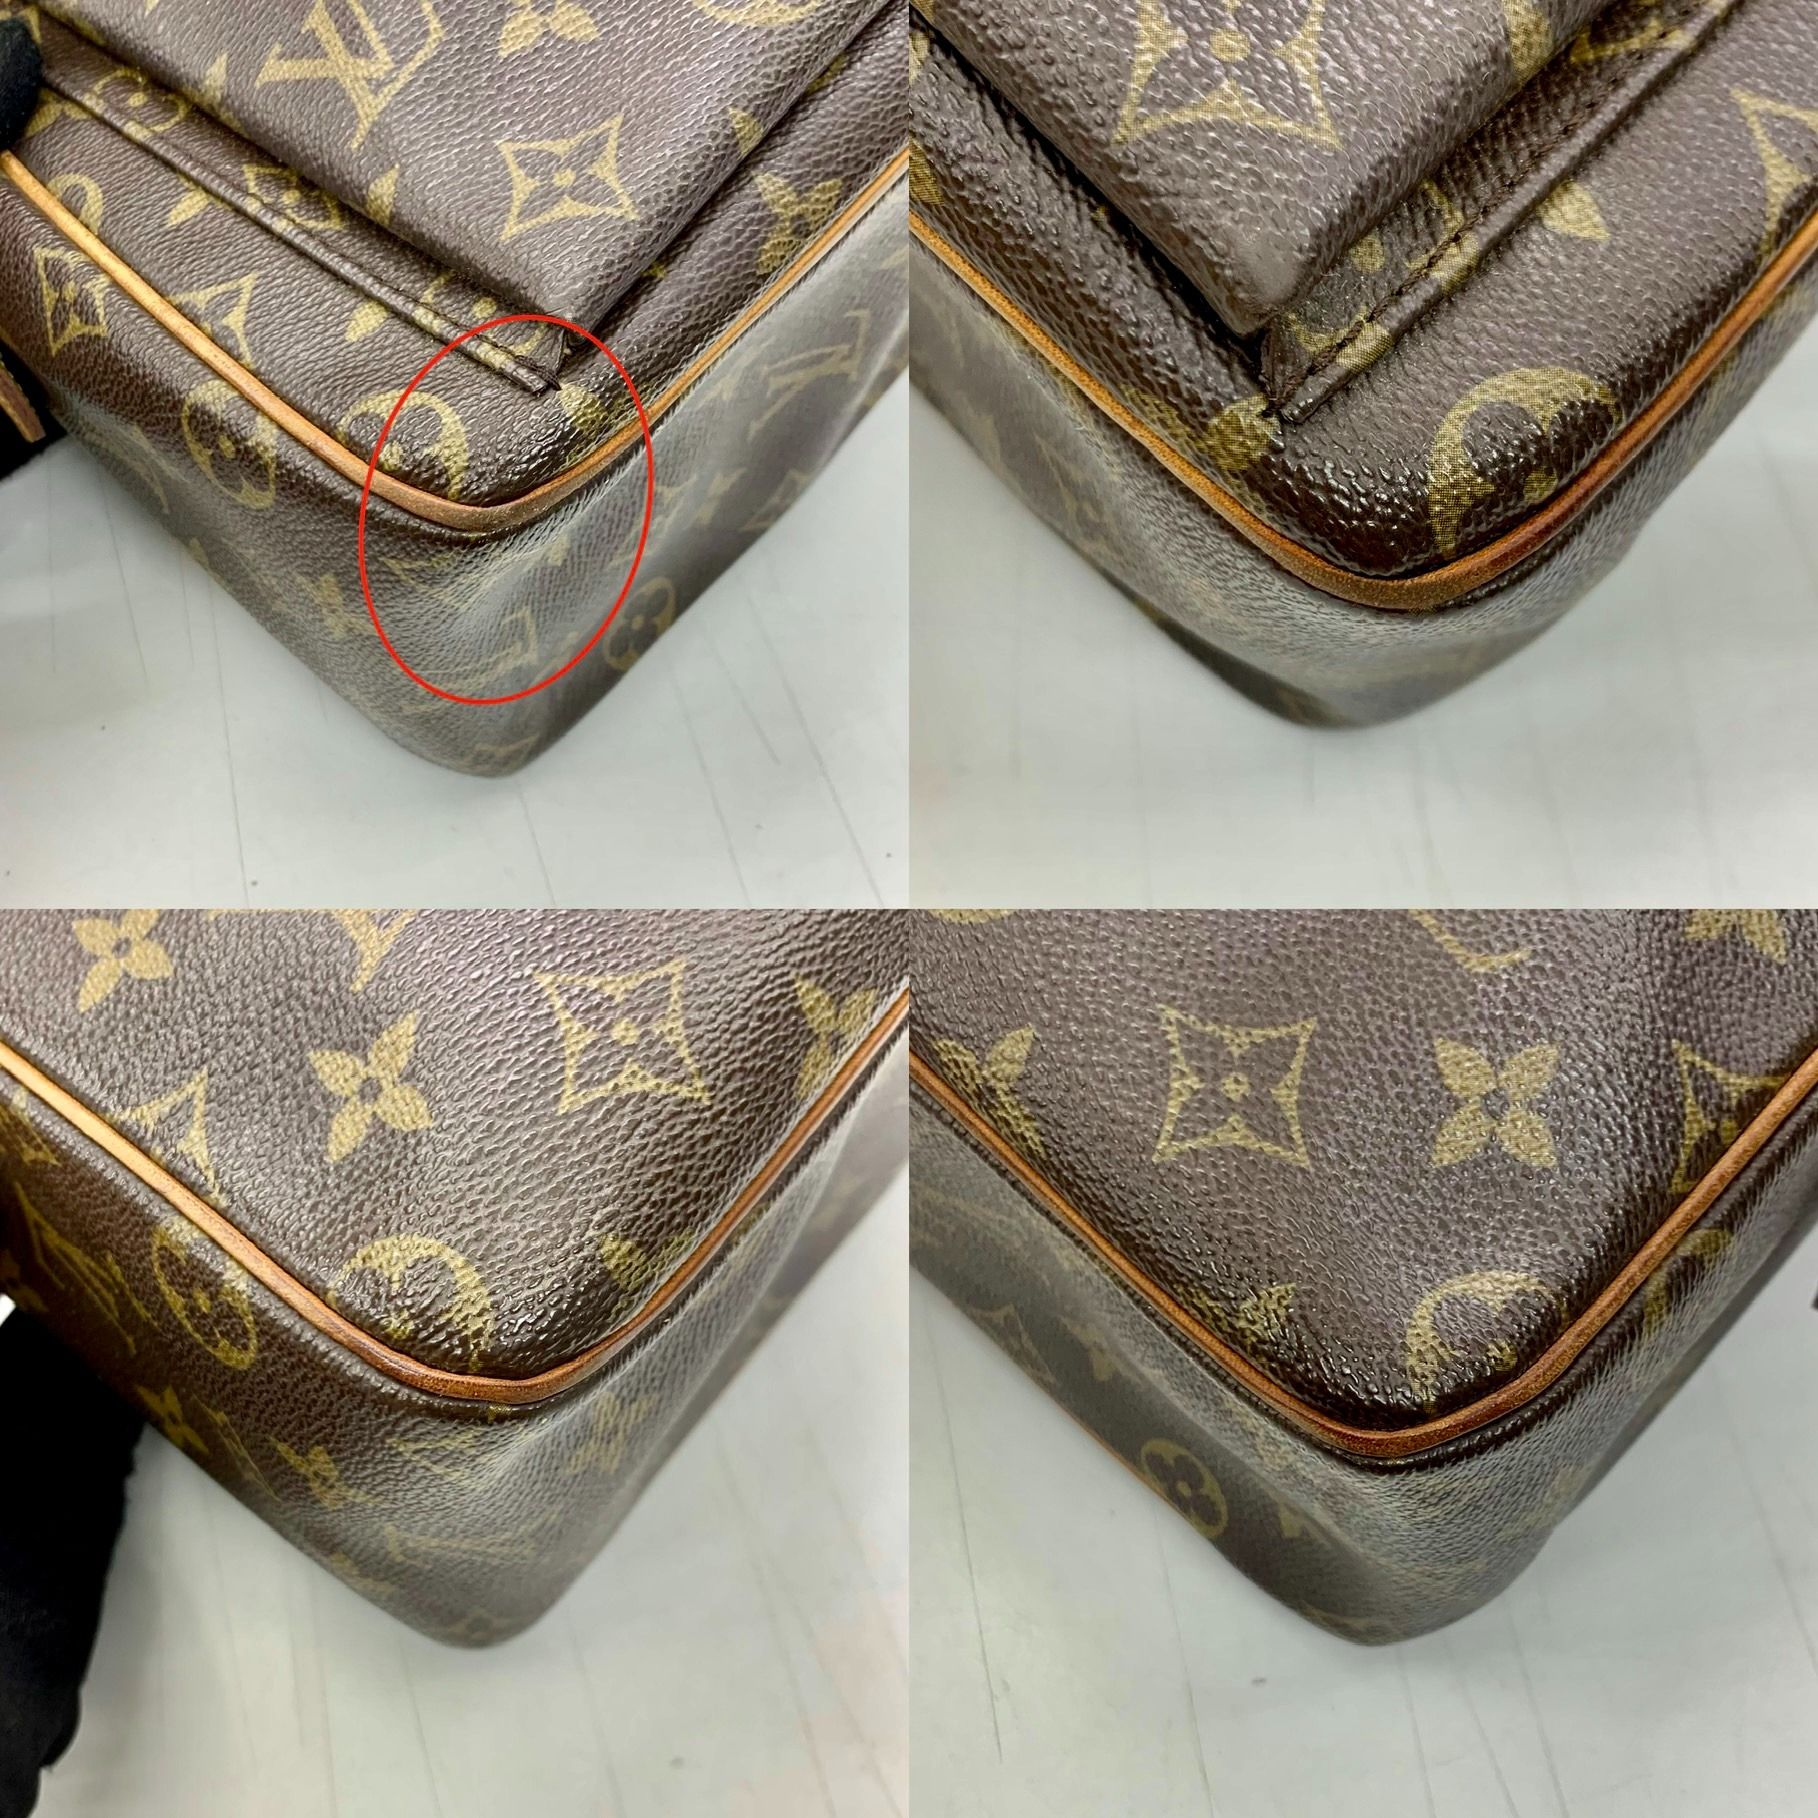 Authentic Louis Vuitton Monogram Vita Cite GM M51163 Shoulder Bag Brown  Canvas